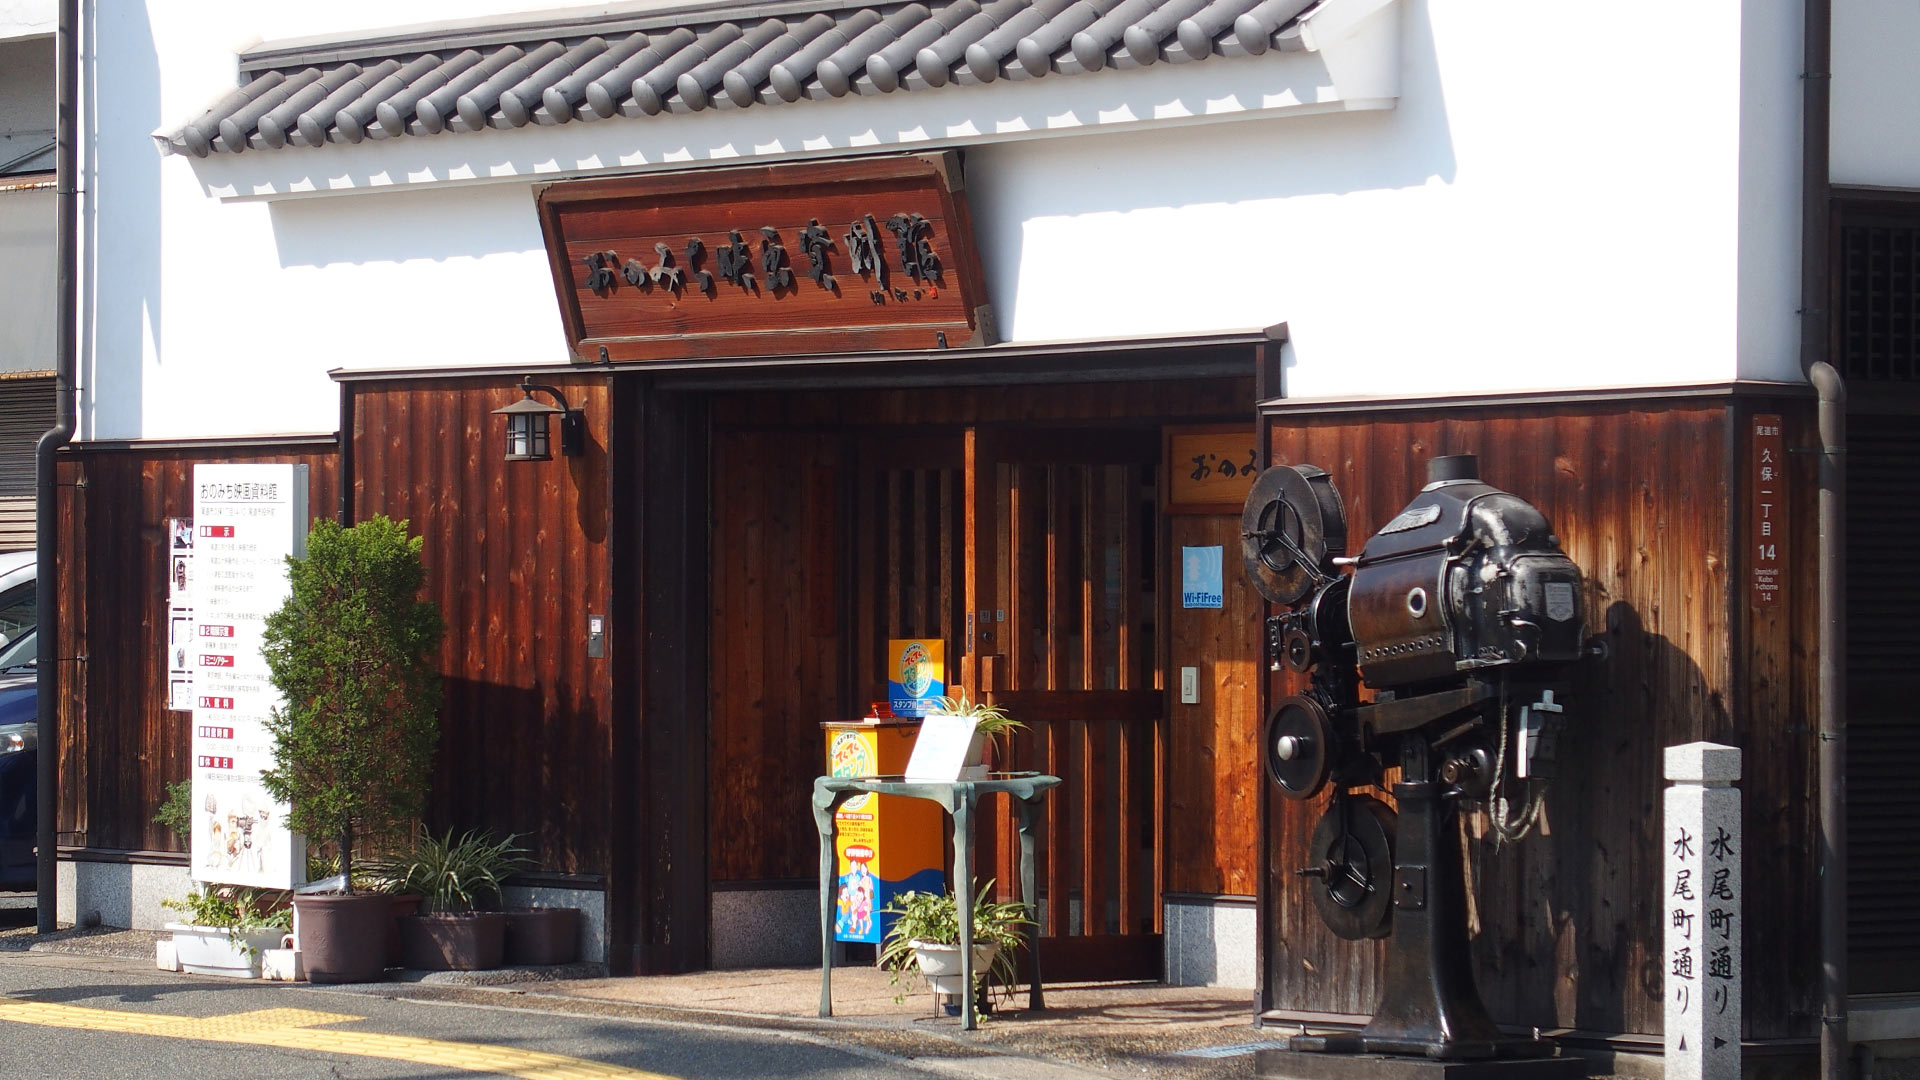 おのみち映画資料館（おのみちえいがしりょうかん）　Onomichi Motion Picture_museum